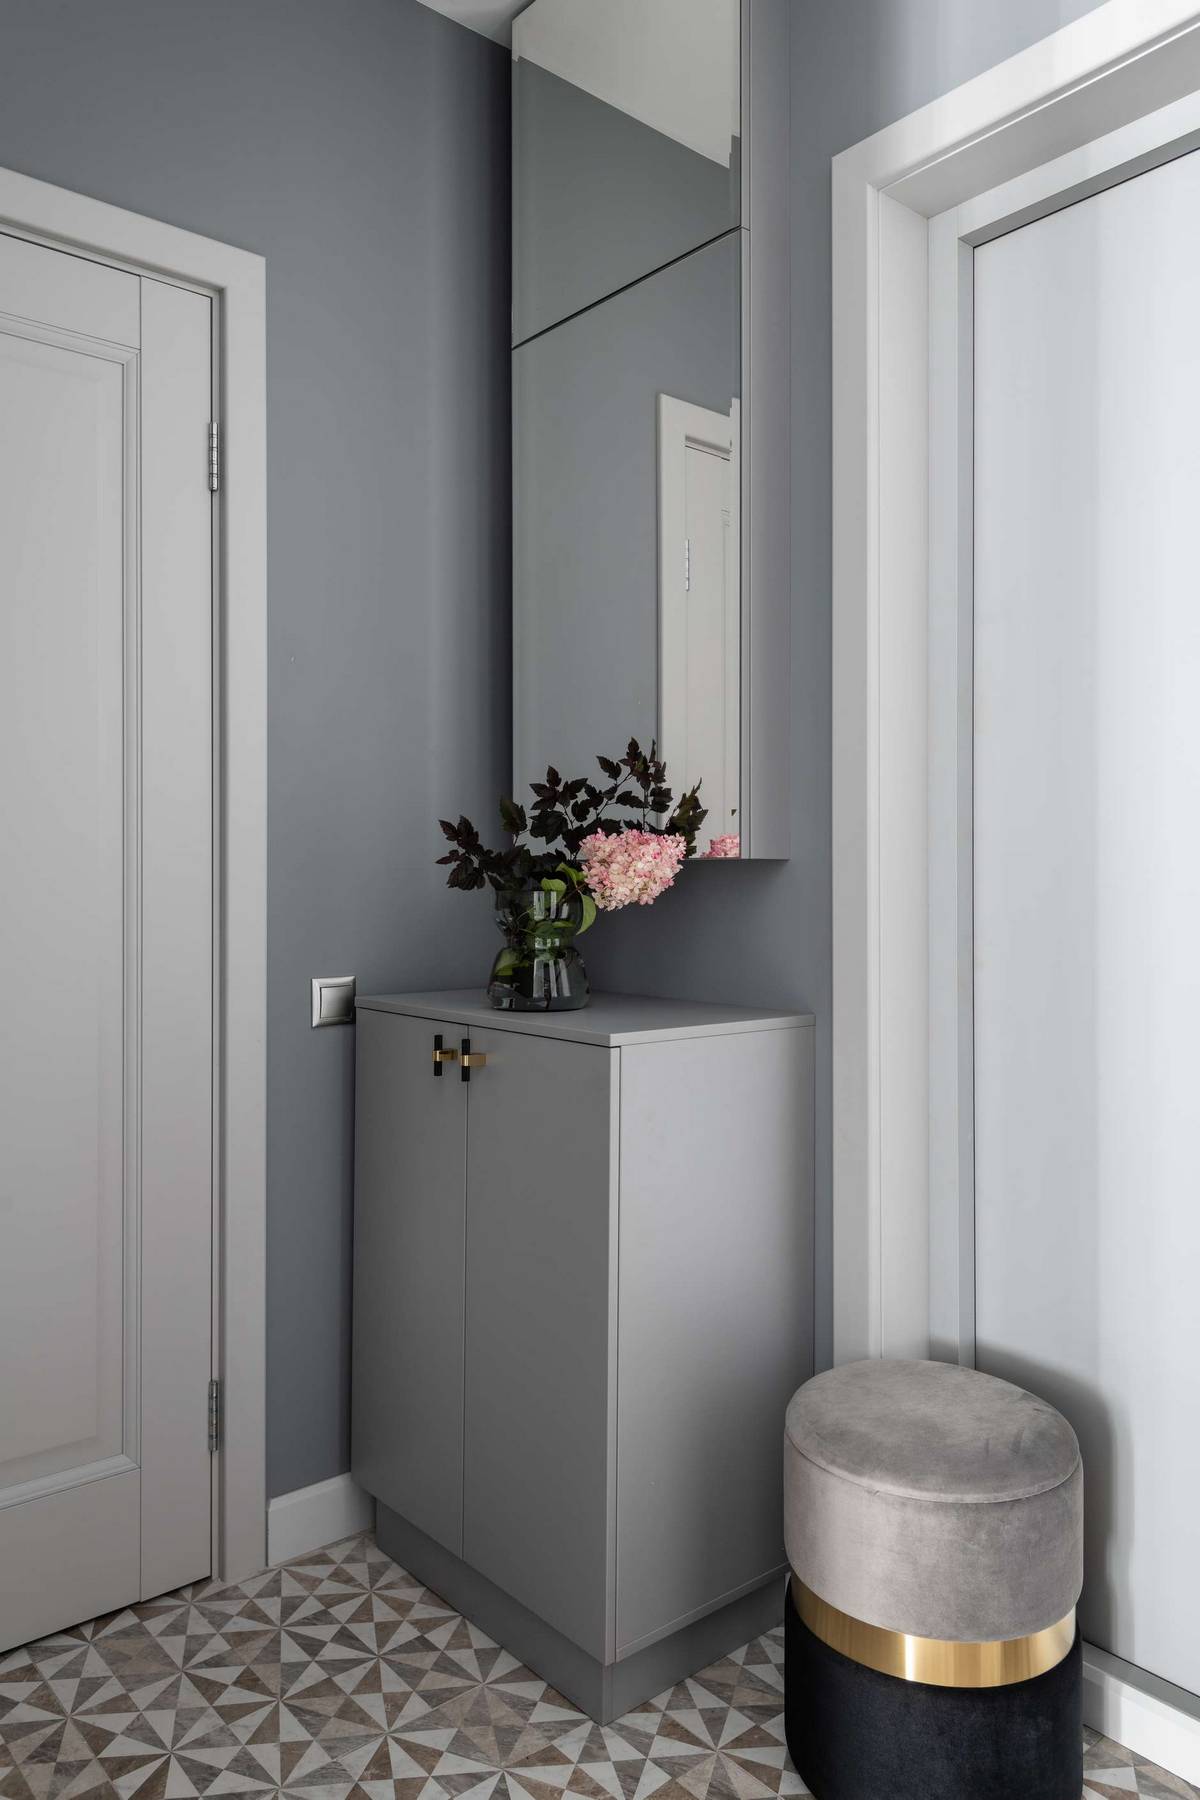 Lối vào căn hộ với chiếc tủ đựng giày màu xám đồng bộ với nền tường, lọ hoa xinh trang trí, bên trên là tủ ốp cửa gương phản chiếu không gian rộng lớn hơn.